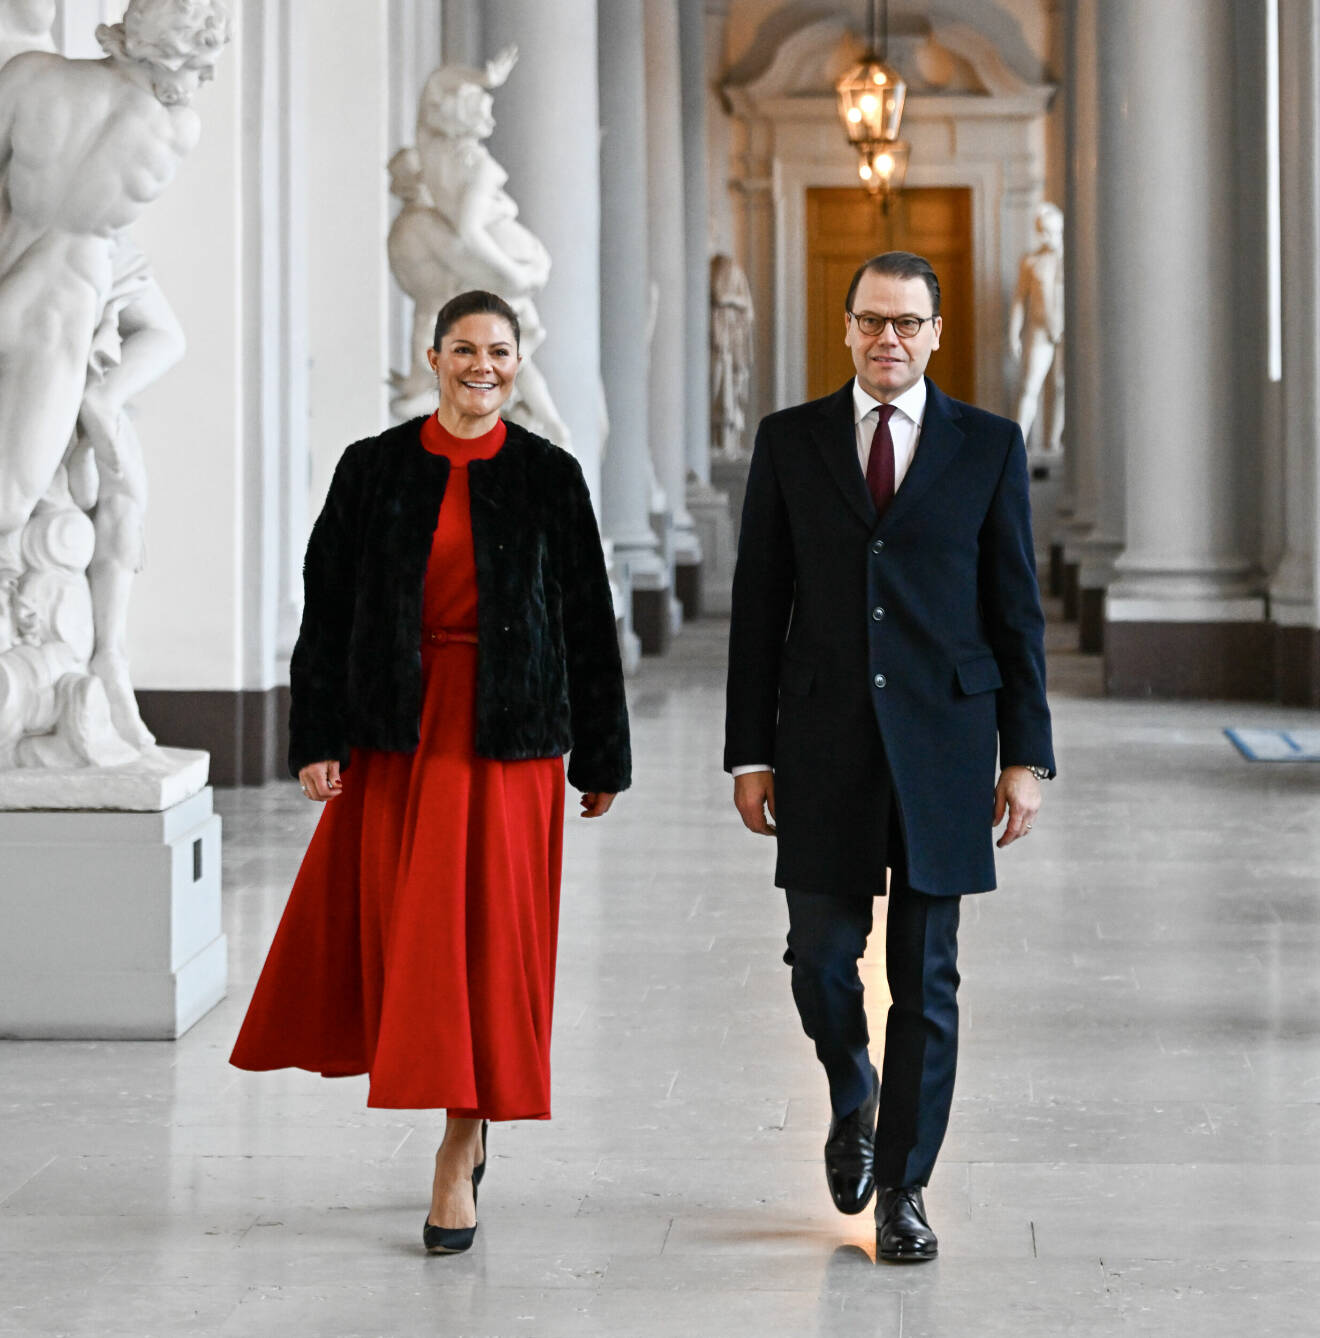 Kronprinsessan Victoria och prins Daniel tog emot årets julgranar av Skogshögskolans studentkår i Umeå på Stockholms slott